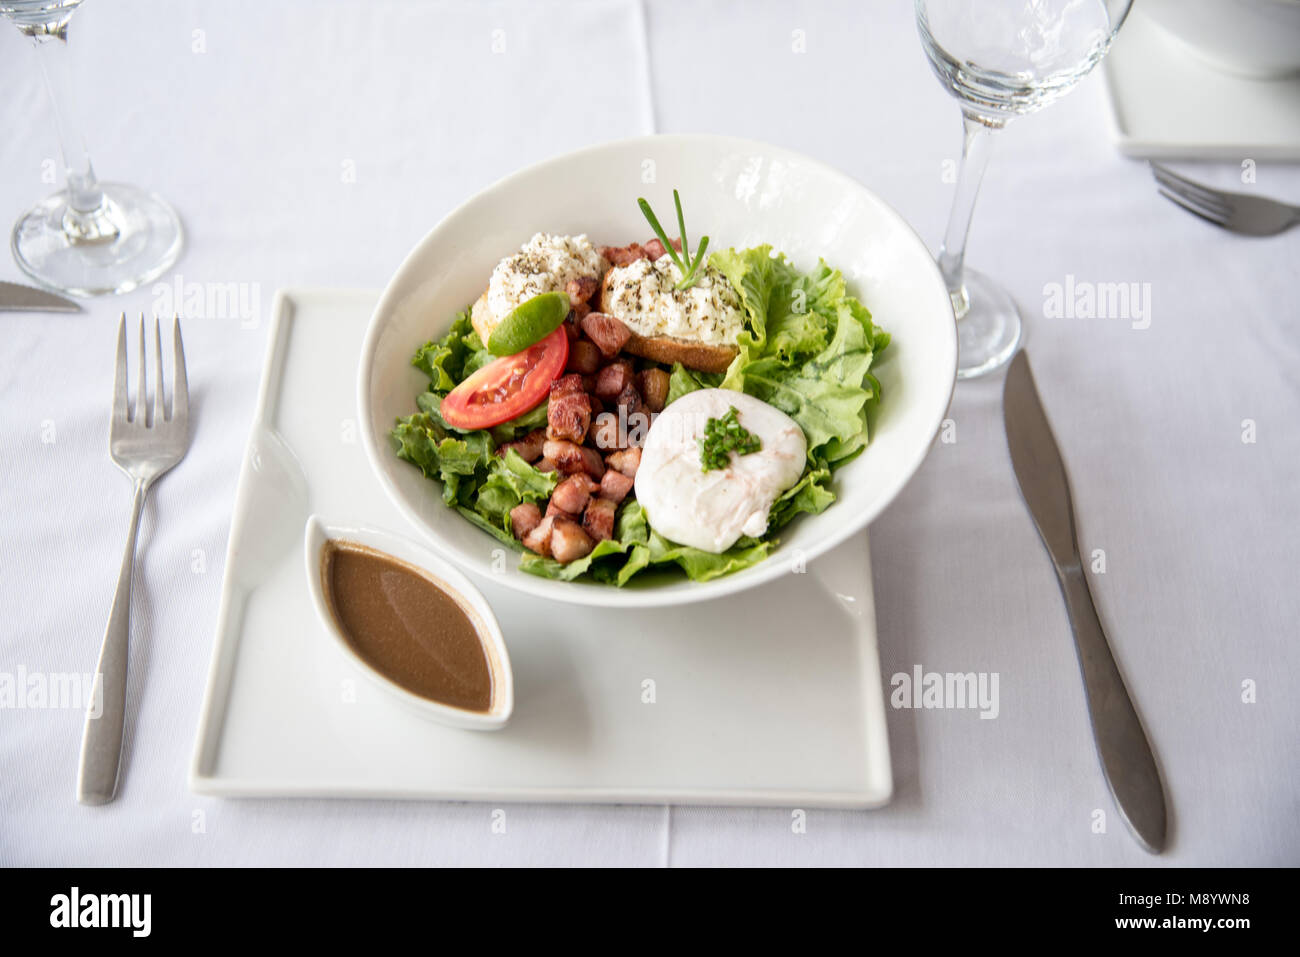 Schönen Ziegenkäse und Bean grüner Salat auf weißem Tischtuch und weißes Porzellan serviert. Hohe Qualität Restaurant Foto. Stockfoto